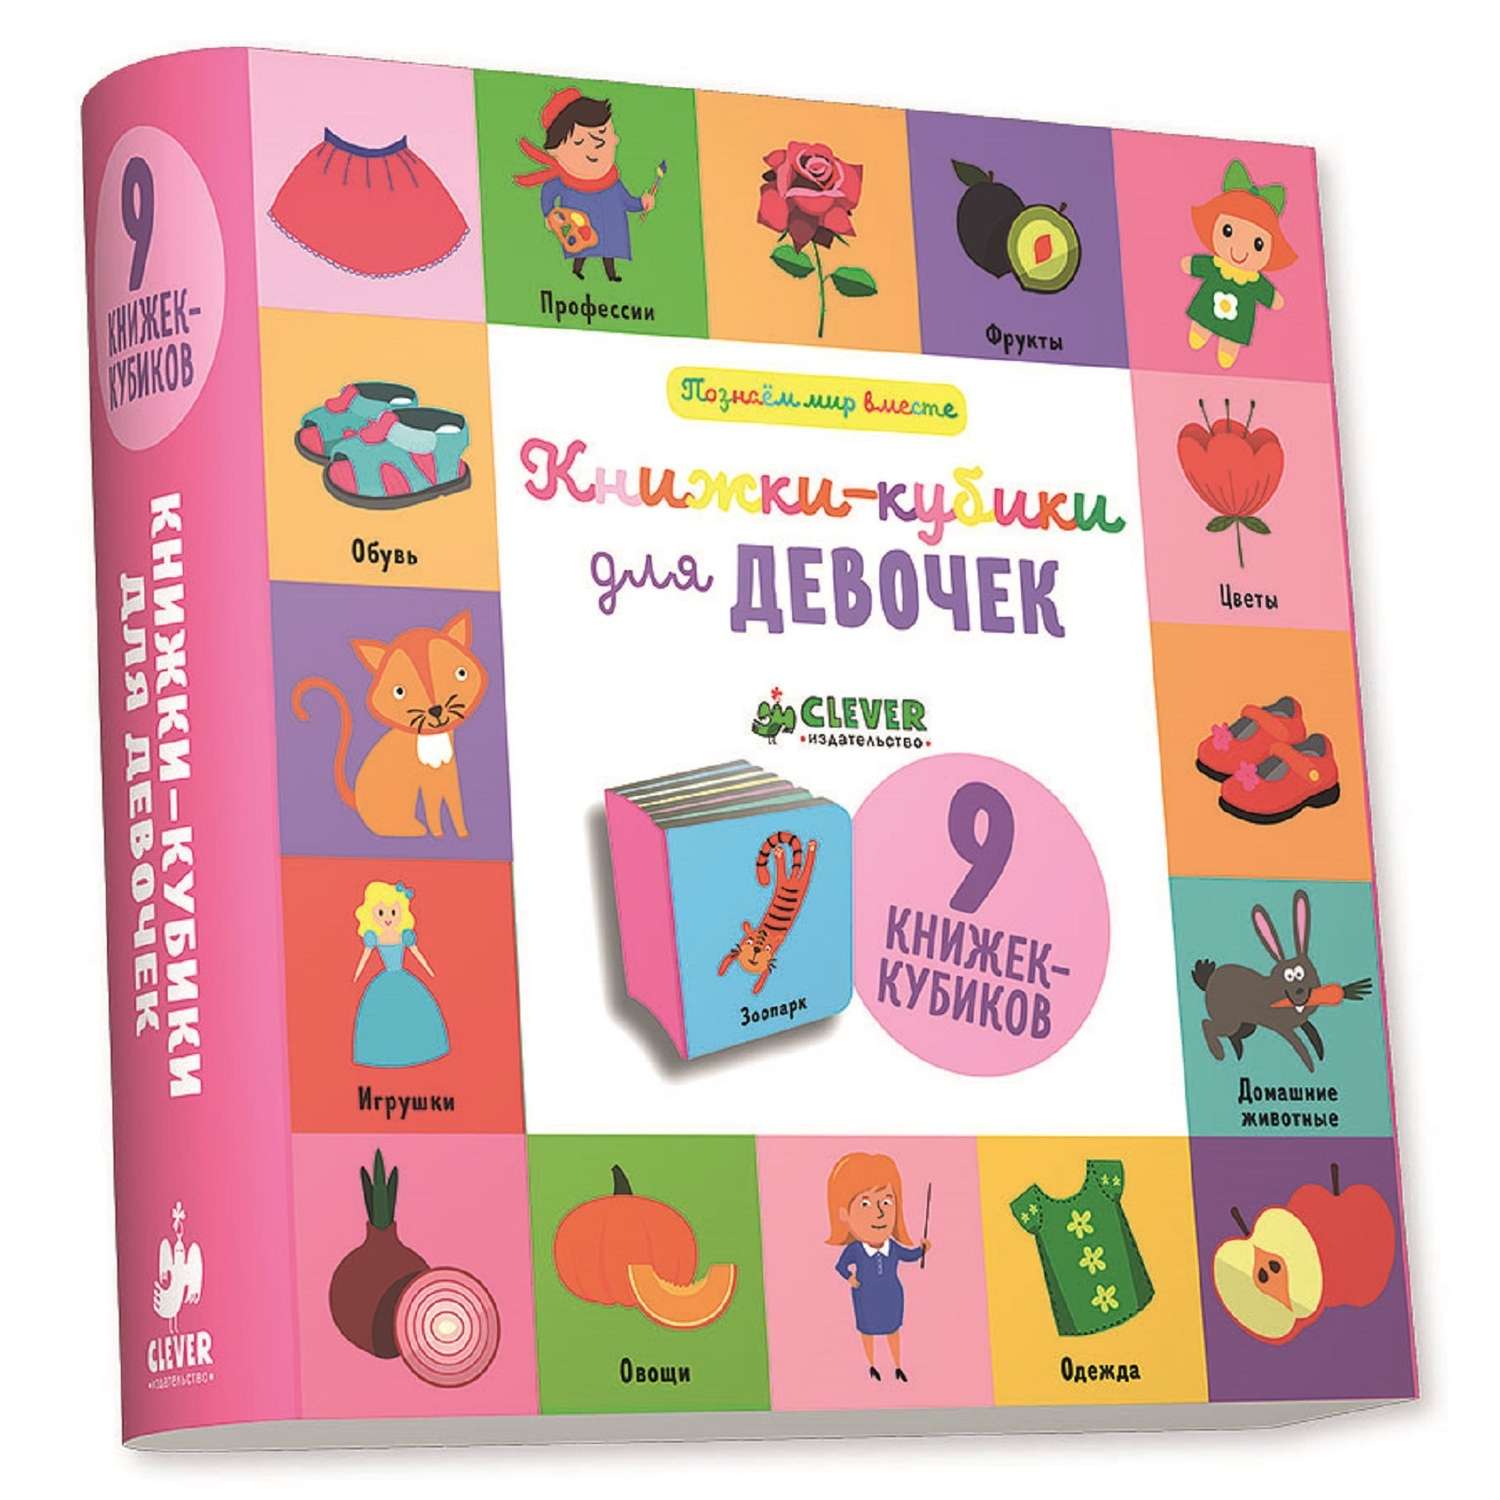 Книга Clever 9 книжек-кубиков Книжки-кубики для девочек - фото 1